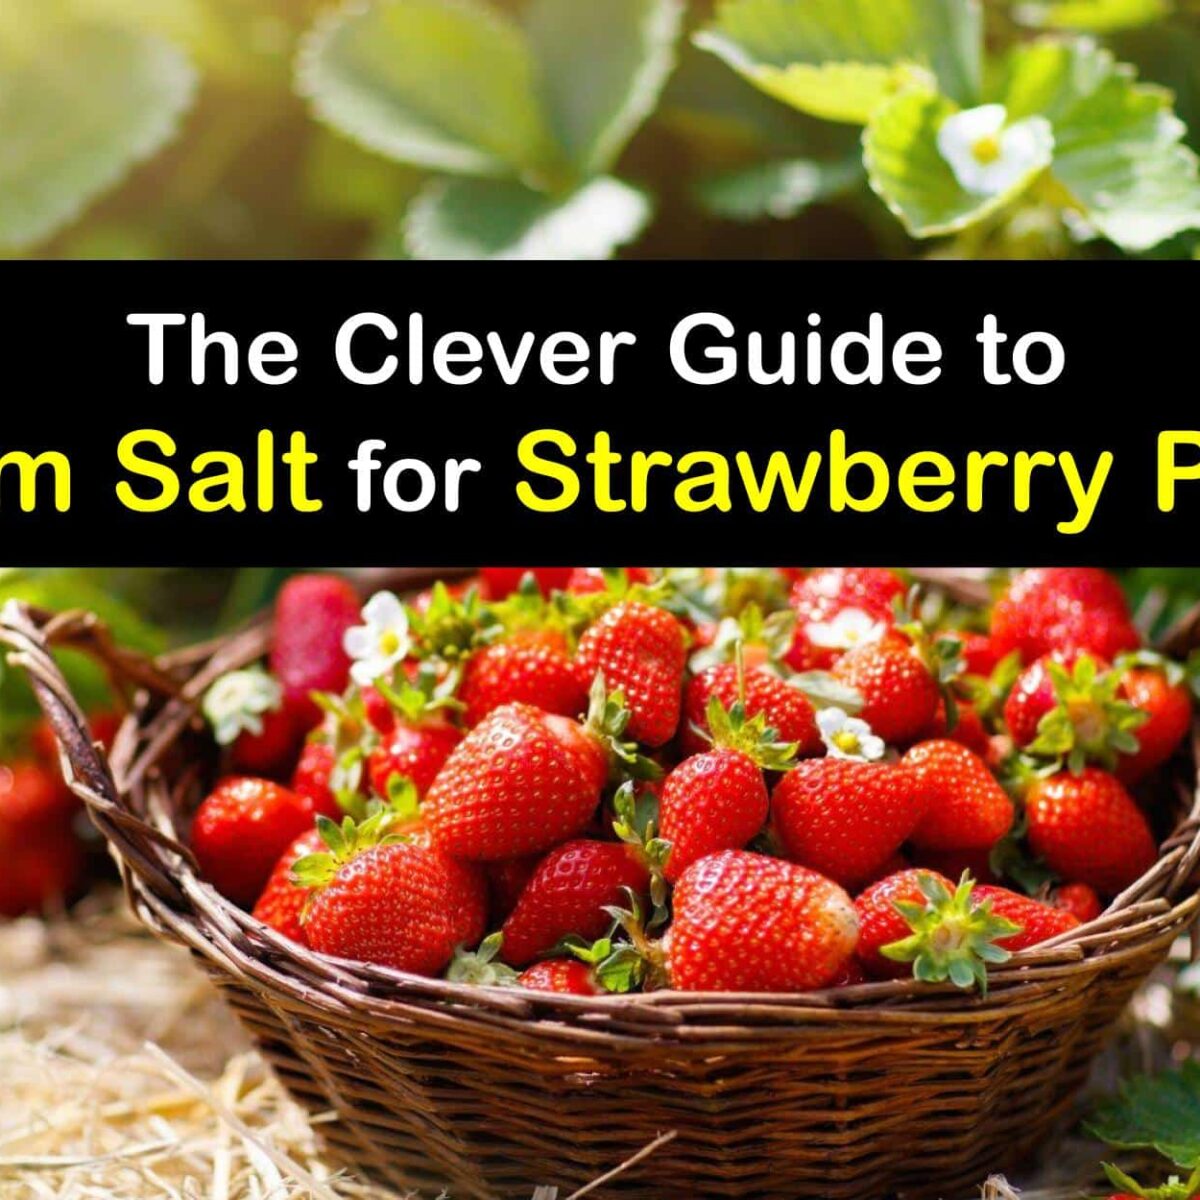 does Epsom salt make strawberries sweeter?